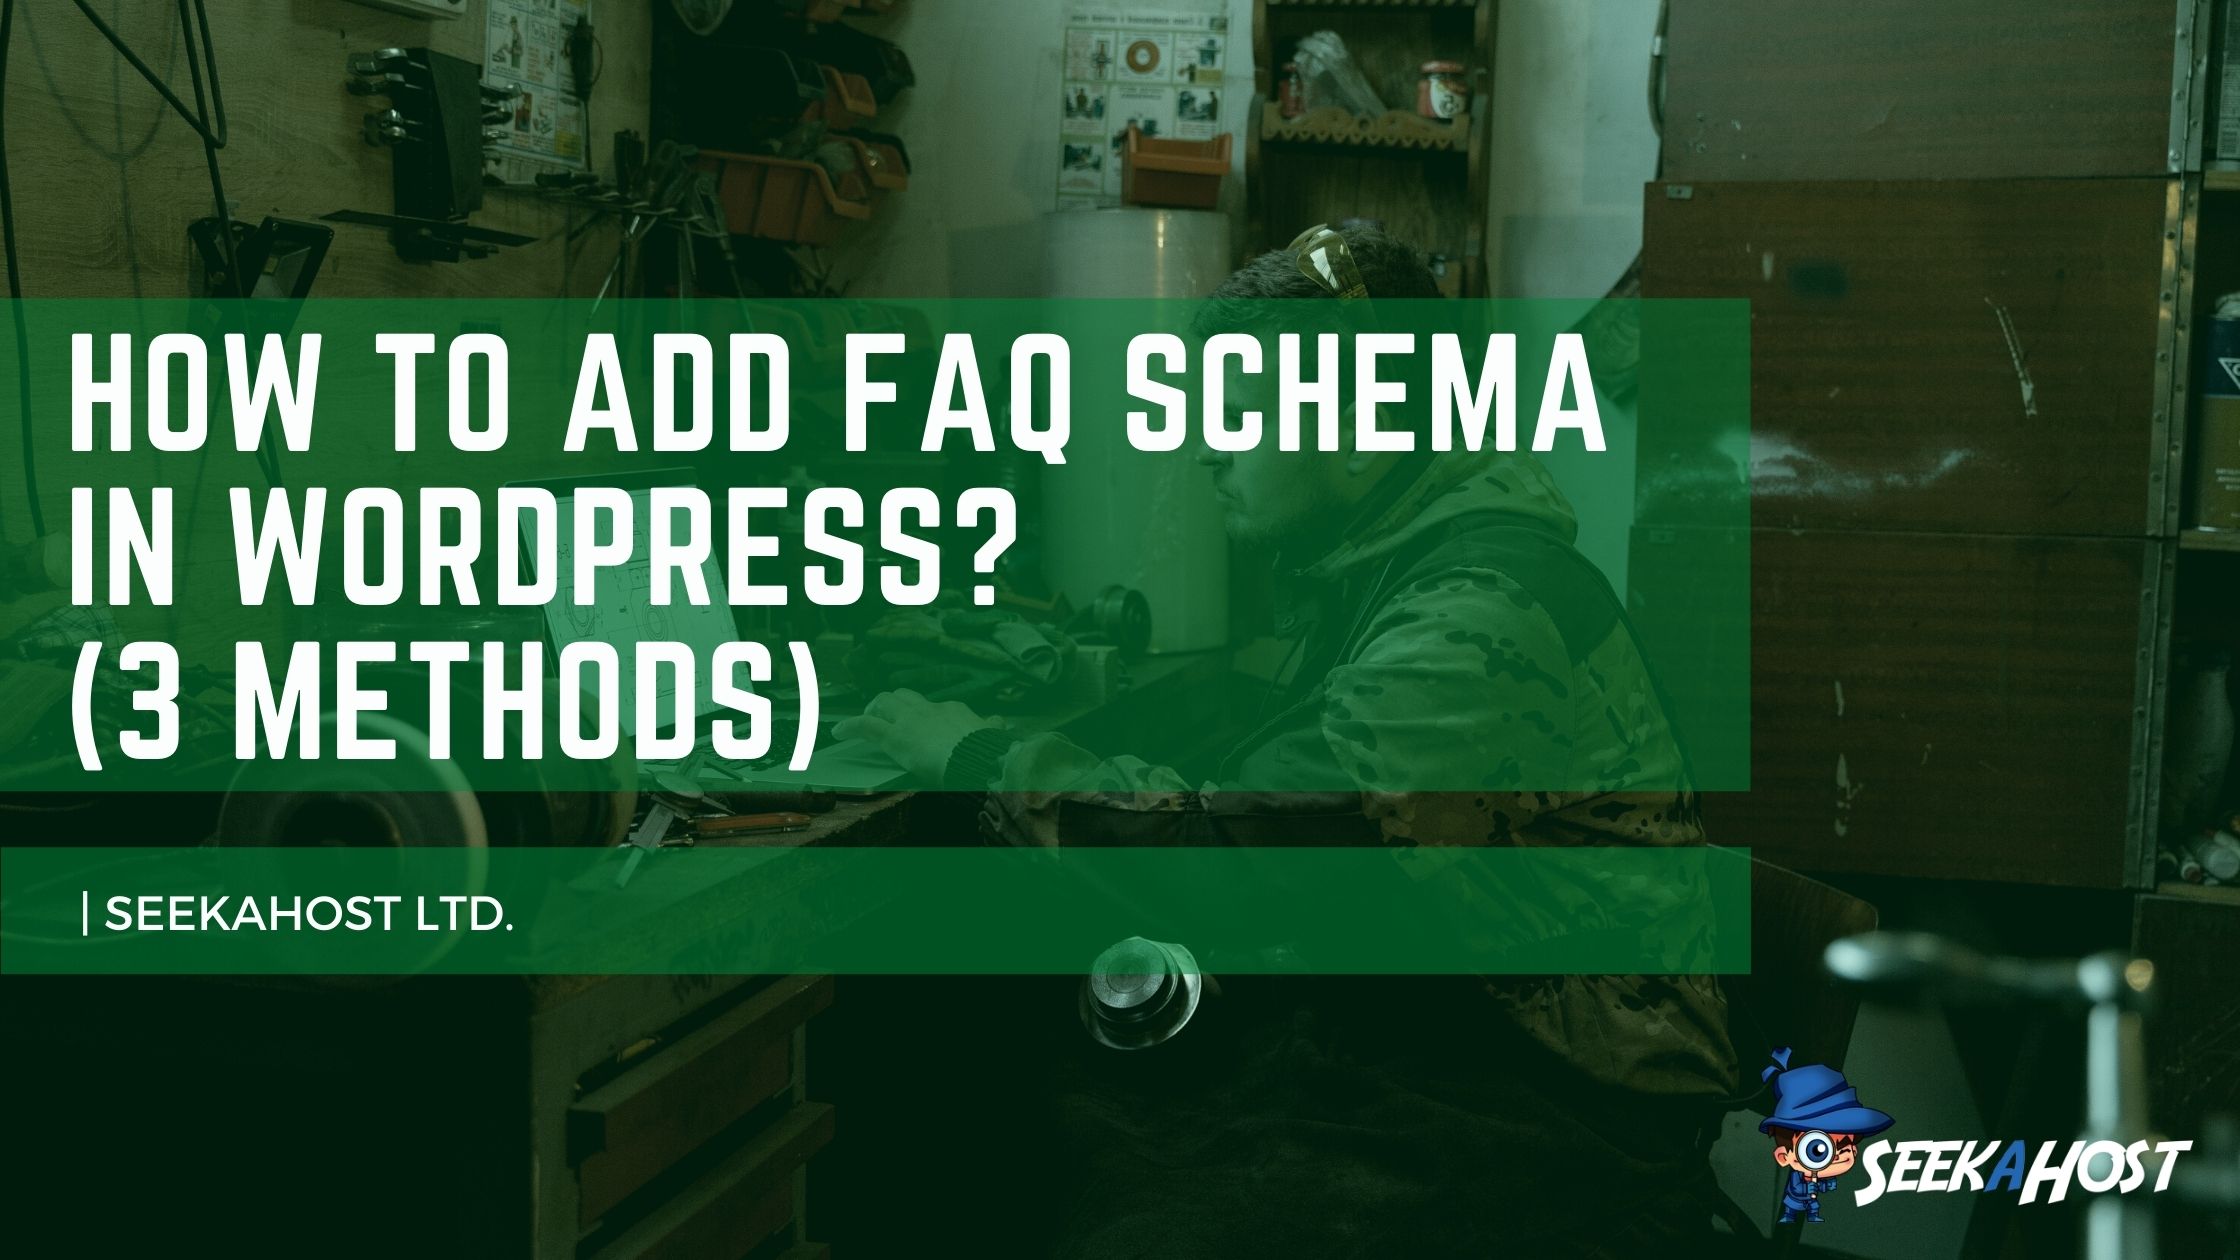 Add FAQ Schema in WordPress